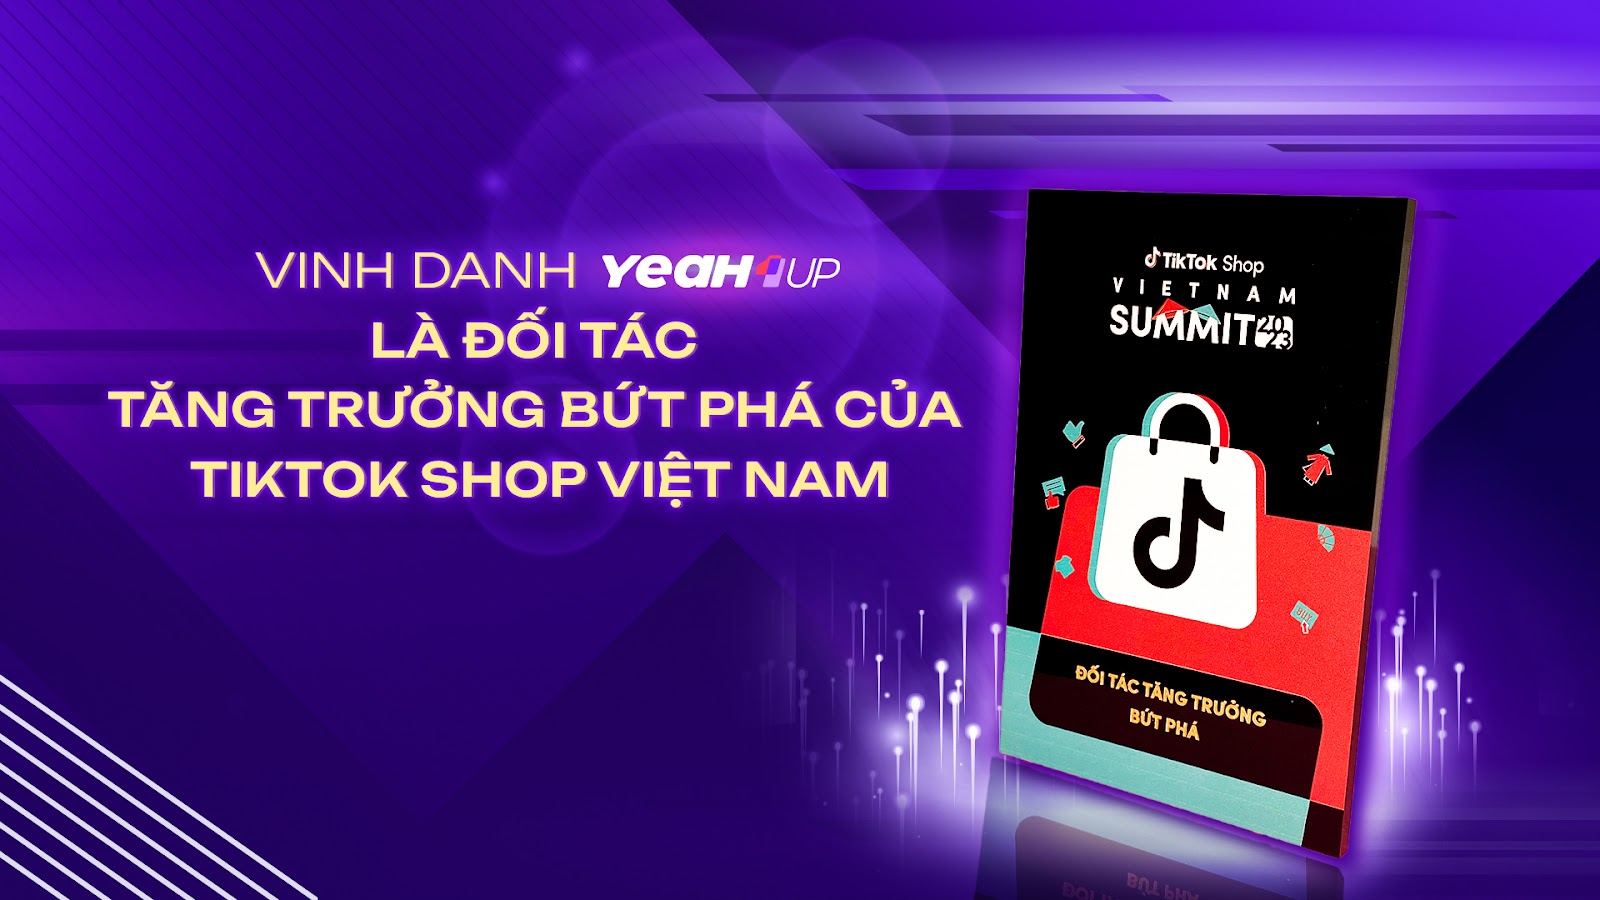 YeaH1 Up vinh dự nhận giải thưởng “Đối tác tăng trưởng bứt phá” của TikTok Shop Việt Nam